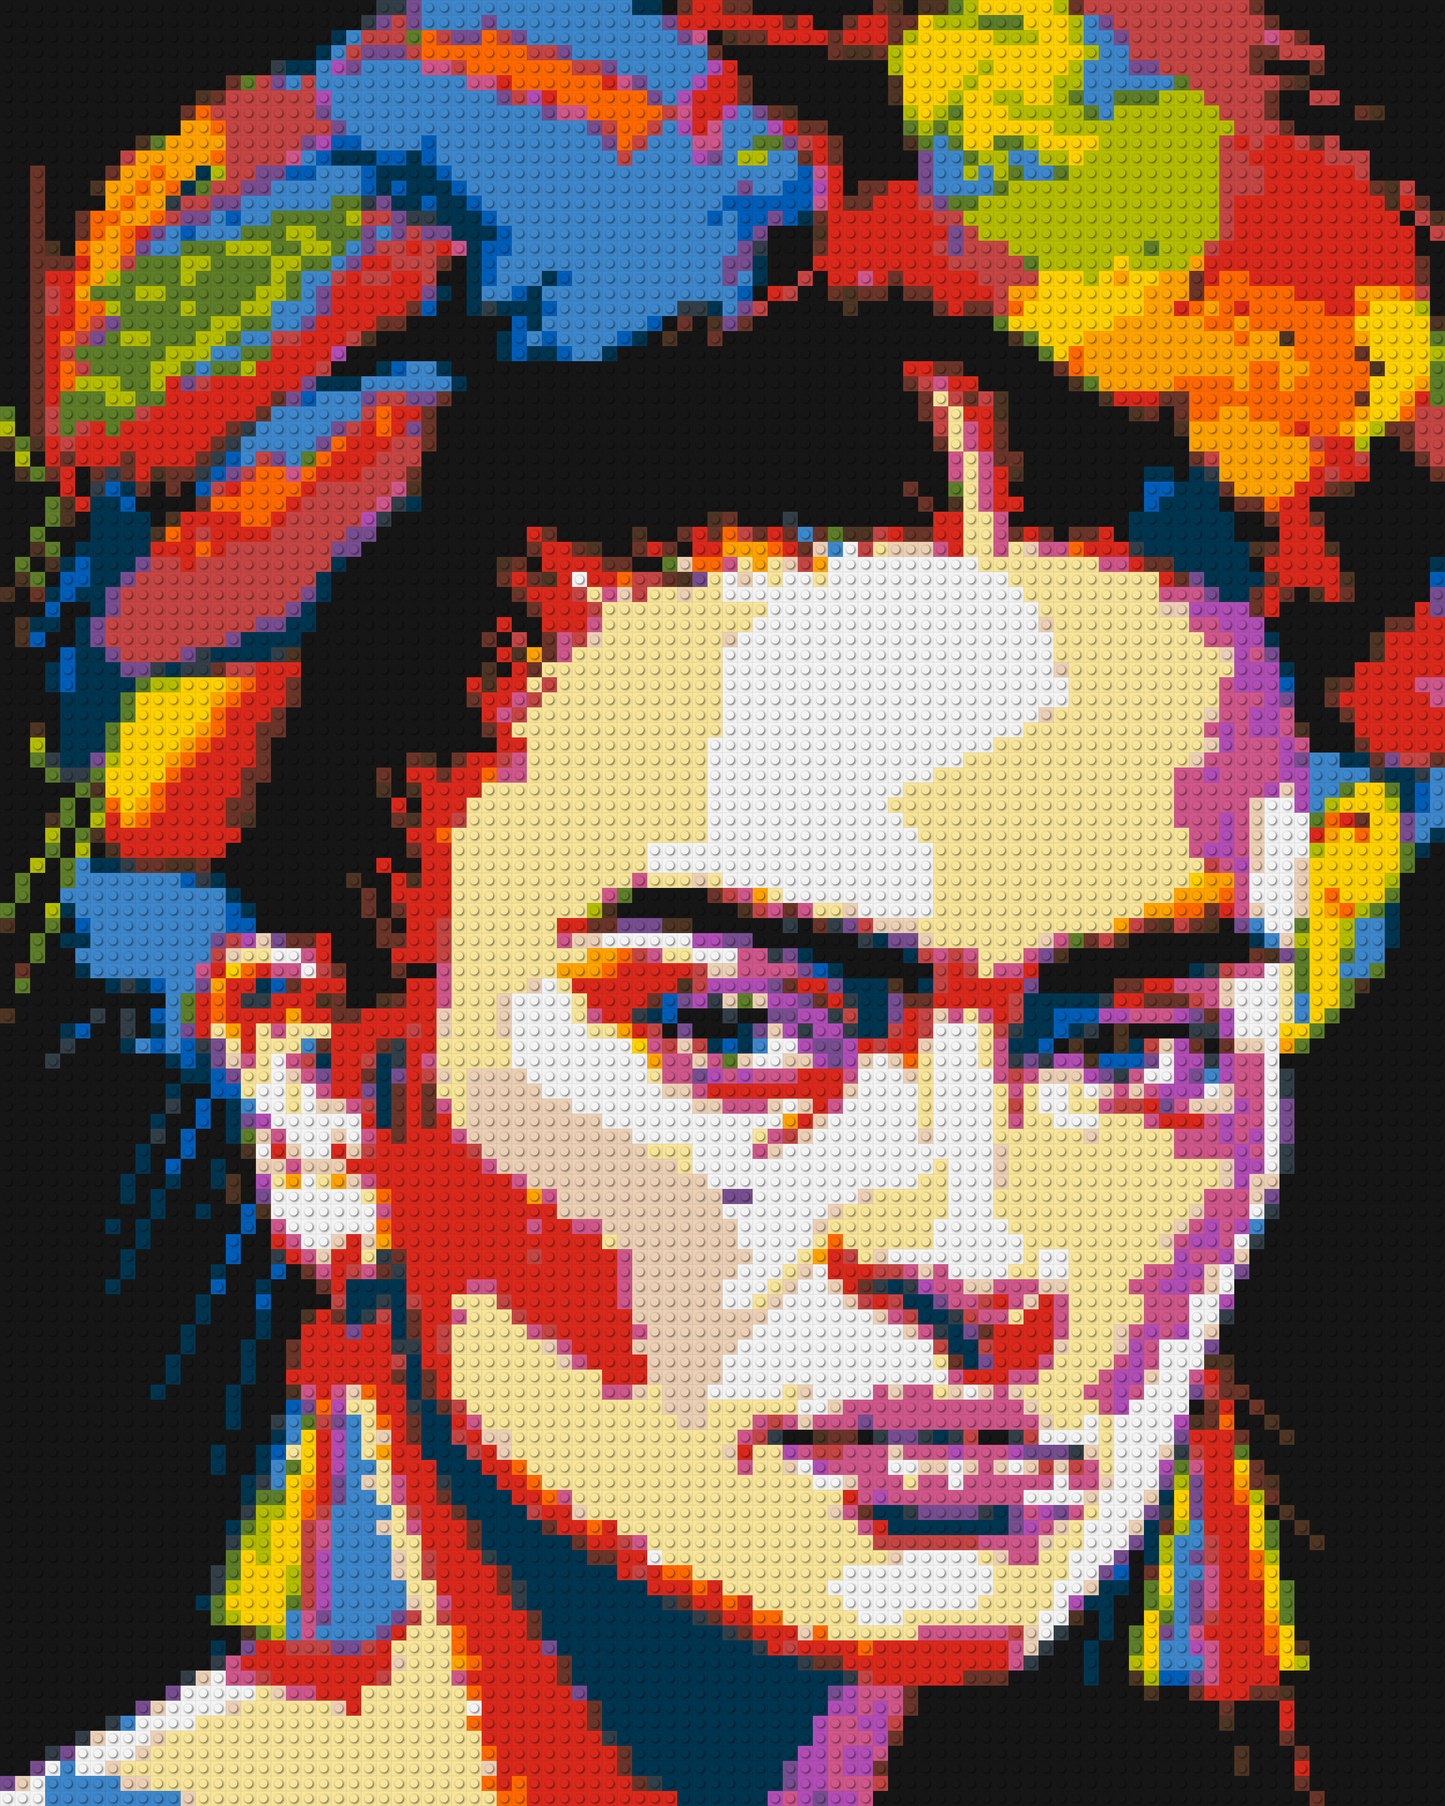 Frida Kahlo - Brick Art Mosaic Kit